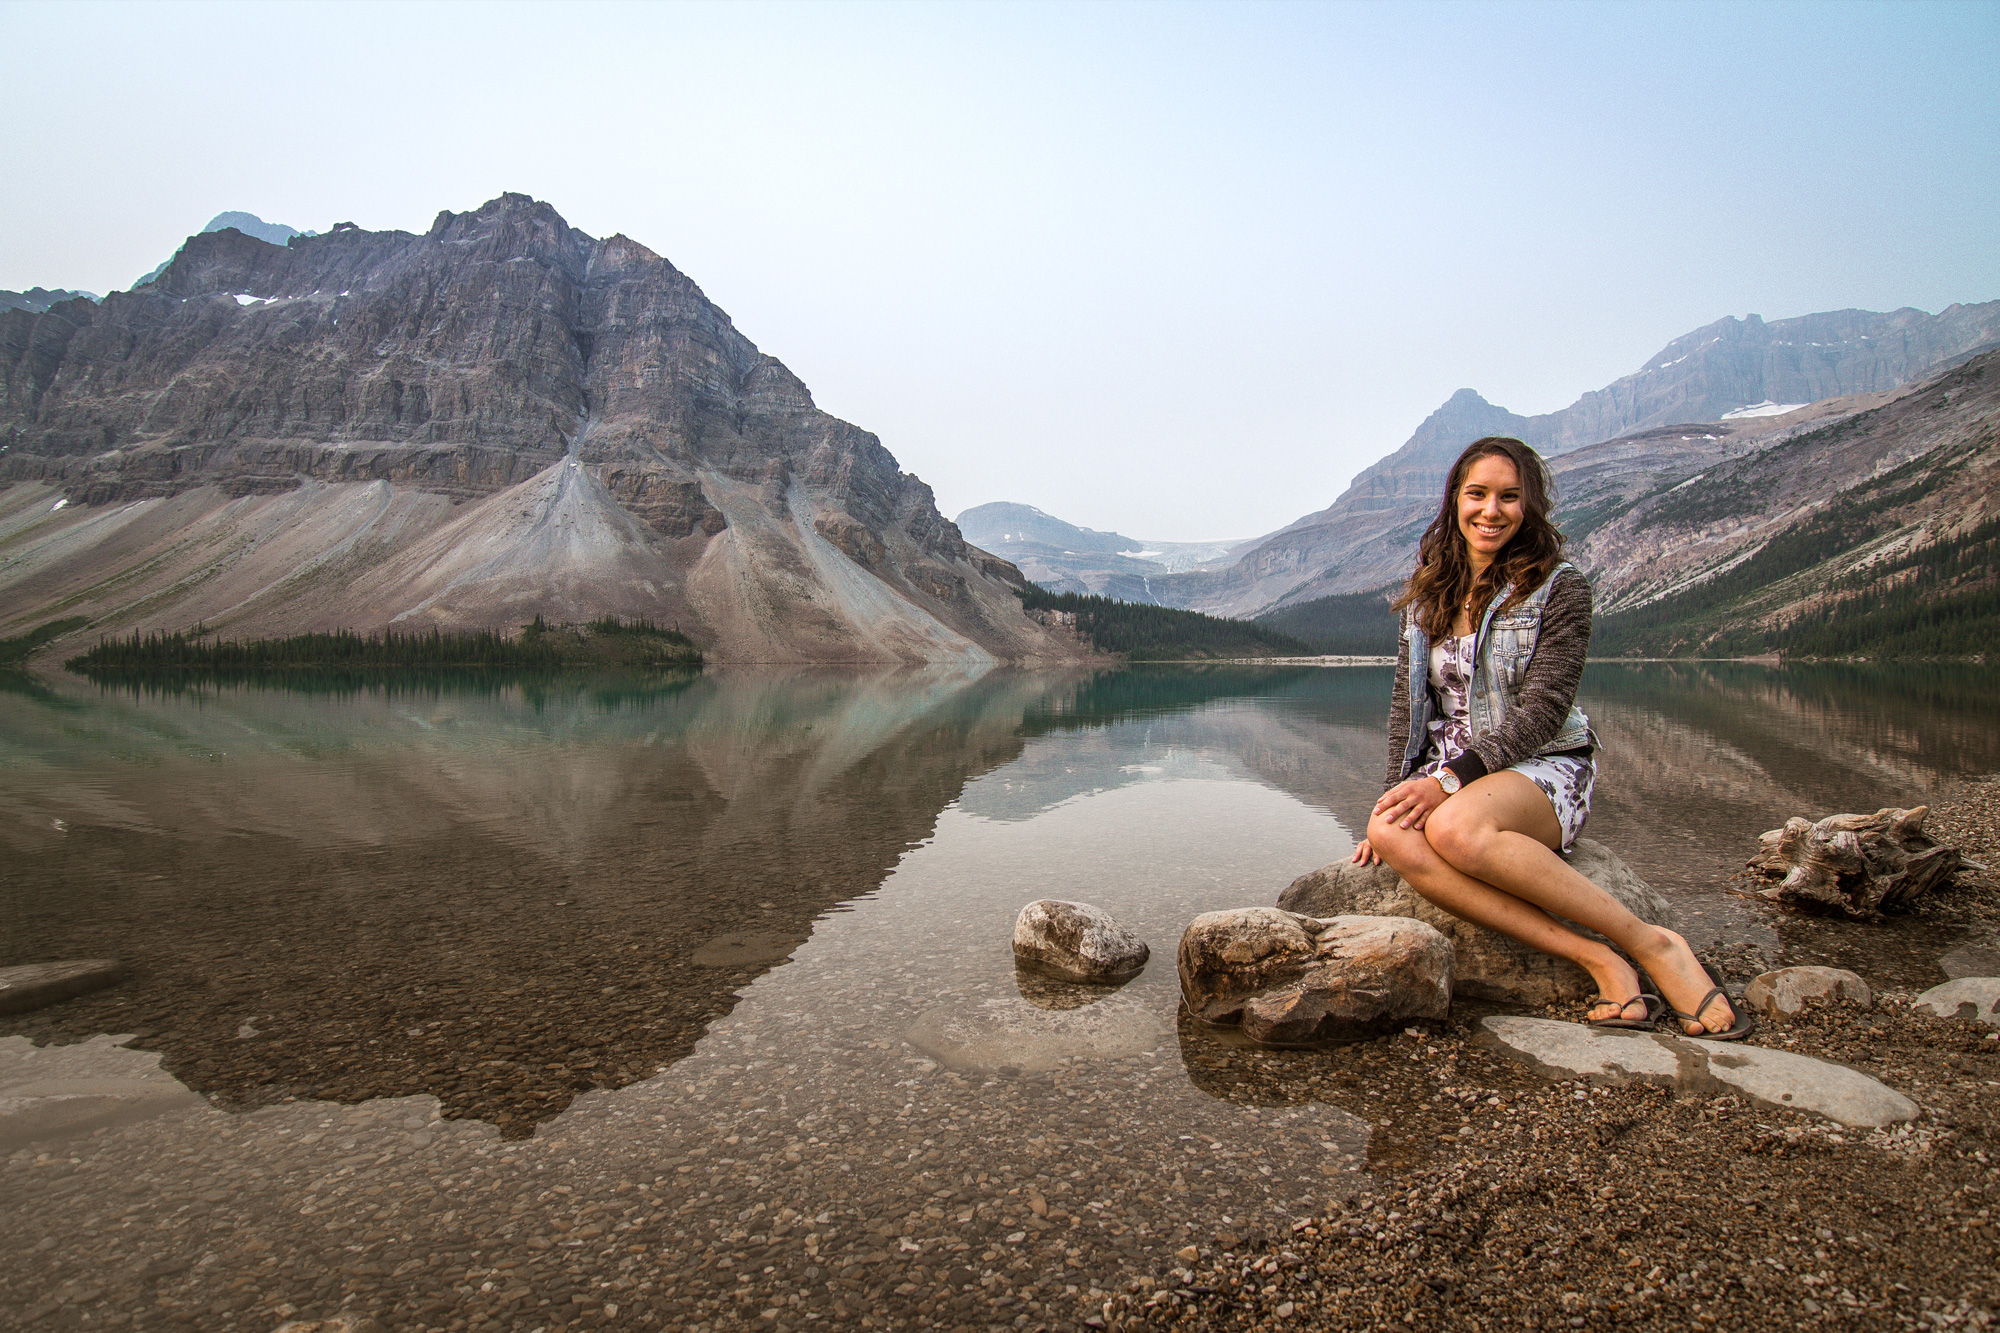 Amy at Bow Lake, Banff National Park